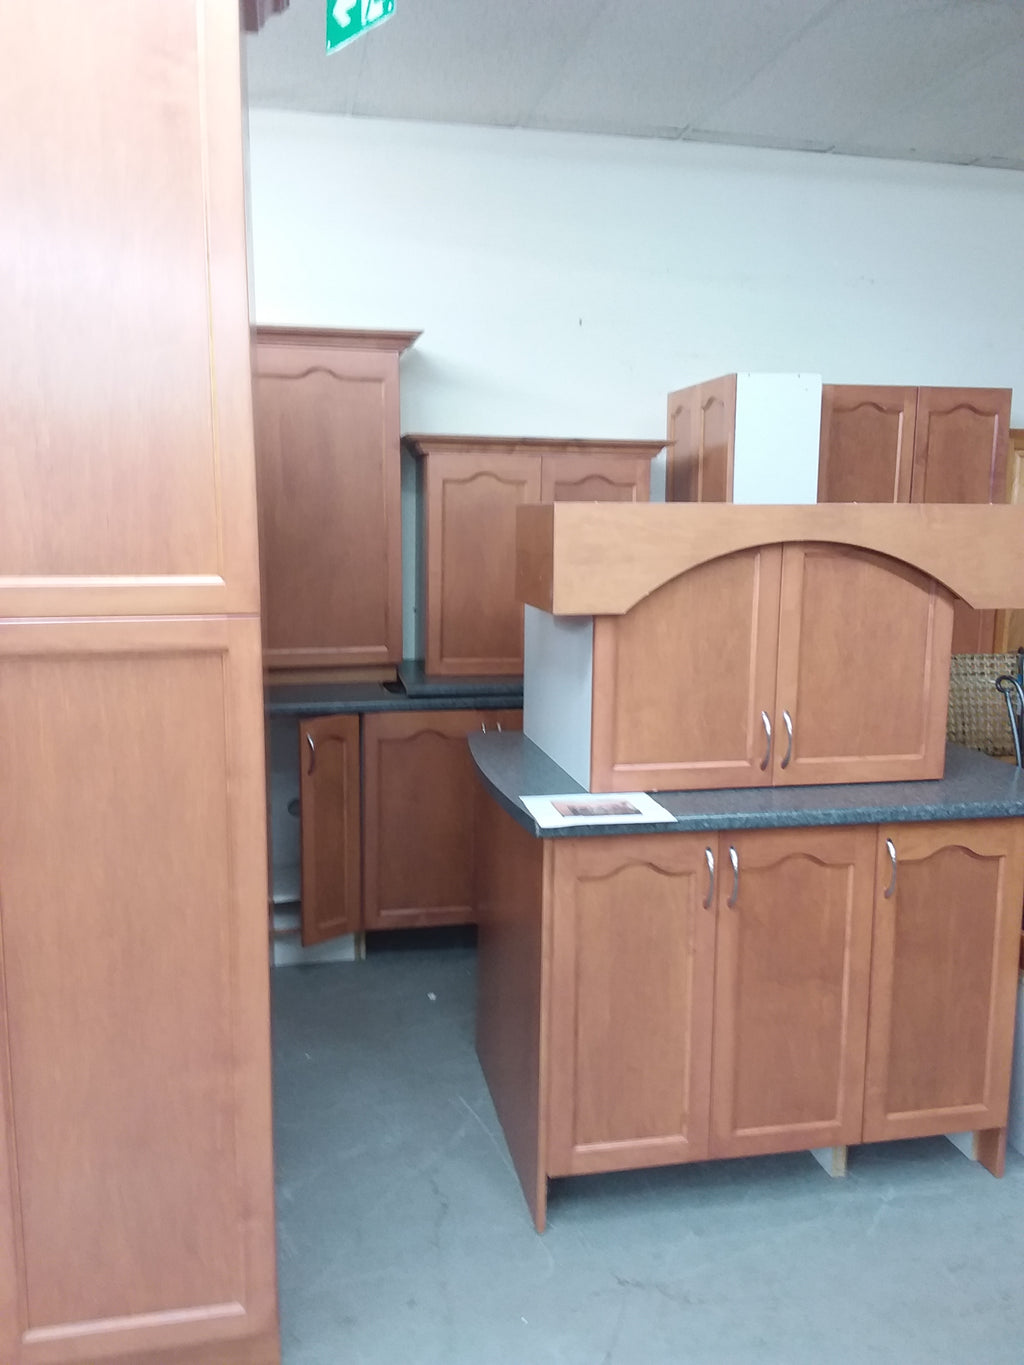 Courtside Kitchen Cabinet Set